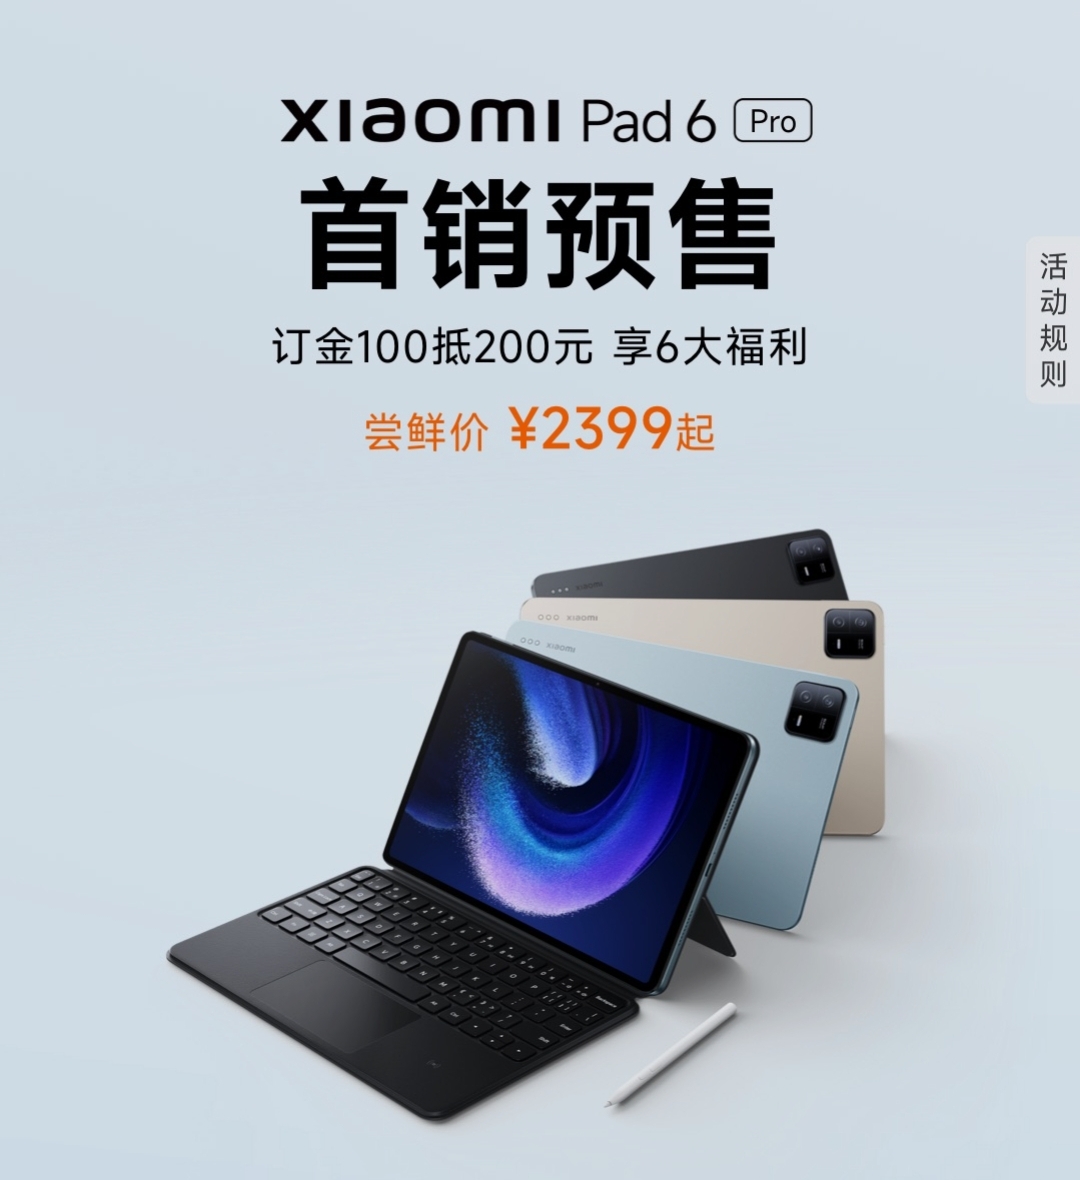 xiaomi-pad-6-pro-tieng-viet-brand-new